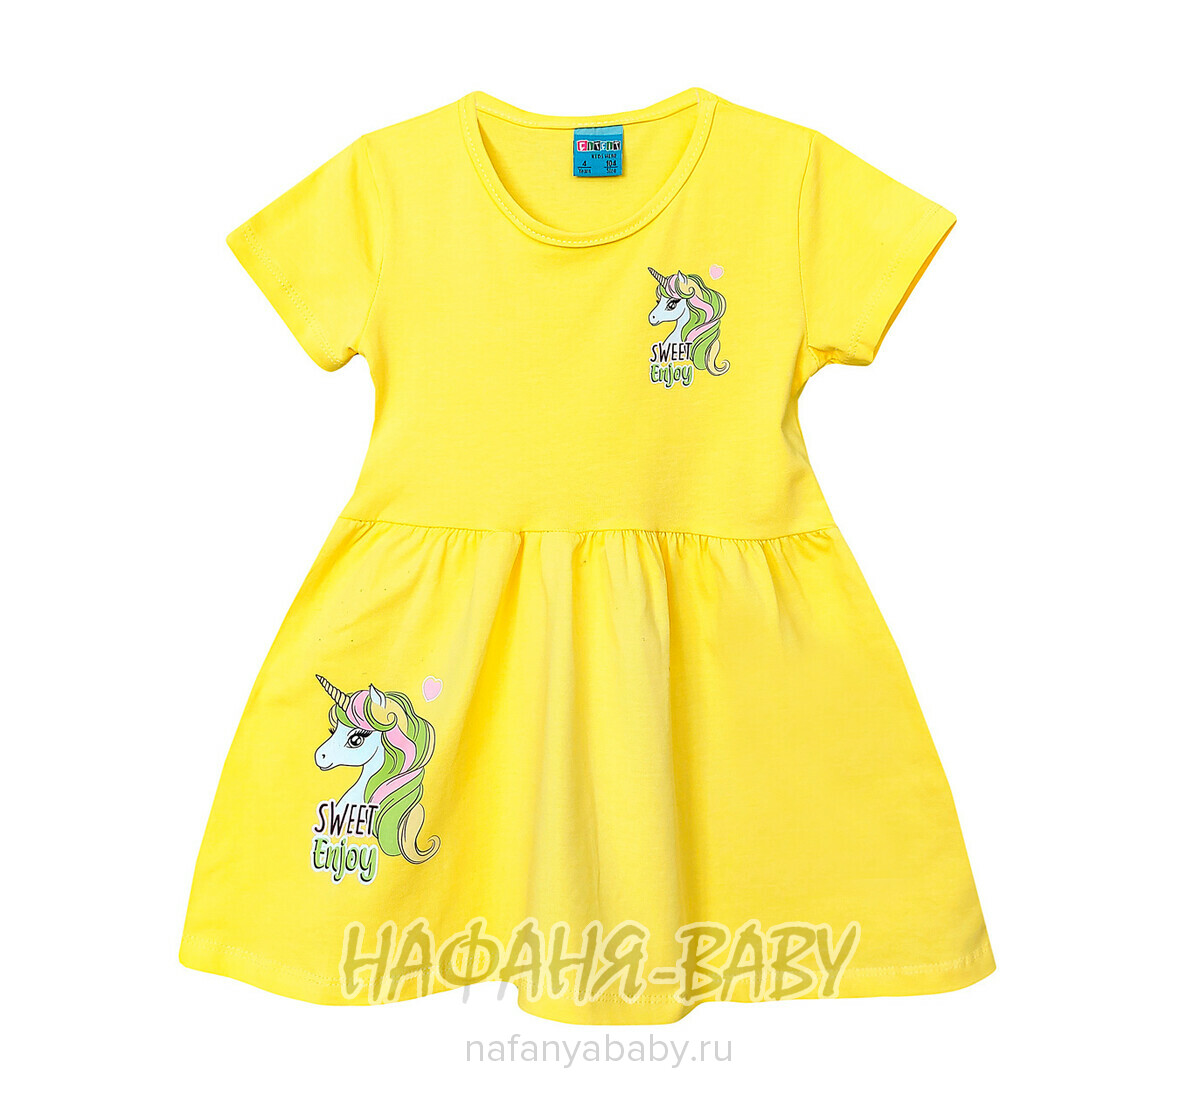 Детское платье Cit Cit арт. 16289, для девочки 3-6 лет, цвет желтый, оптом Турция